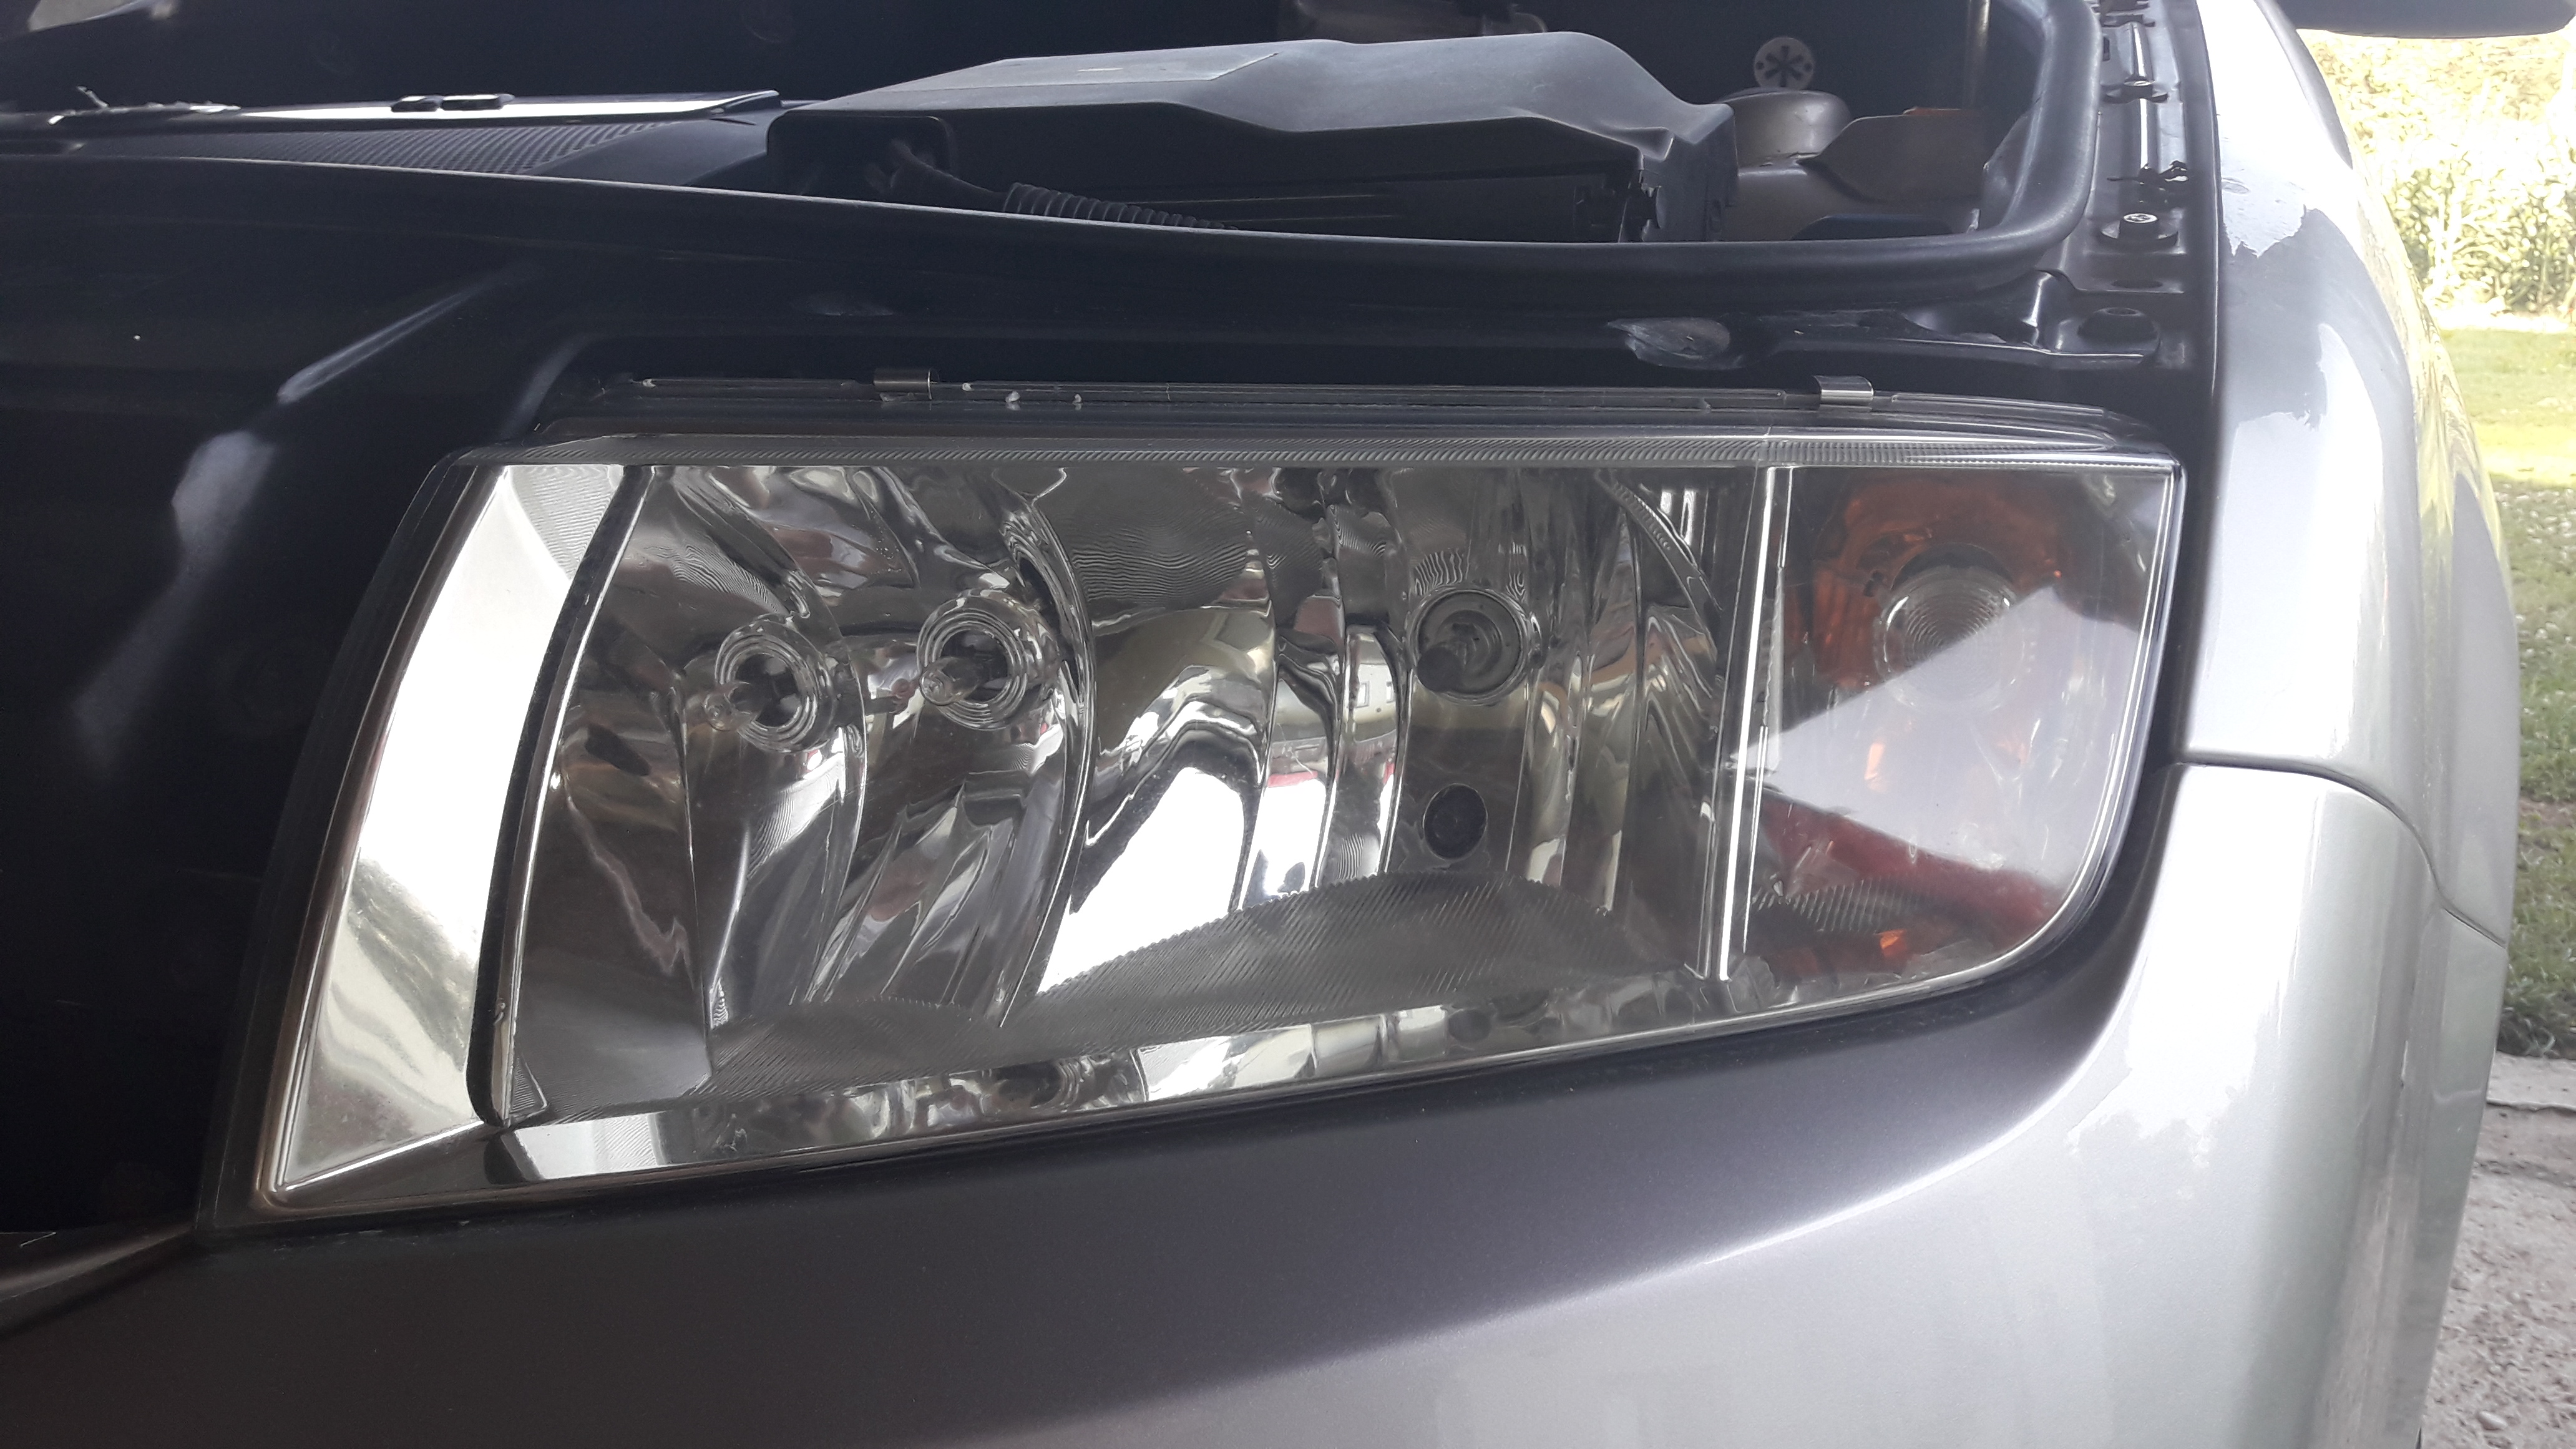 ibiz metal polish on headlights